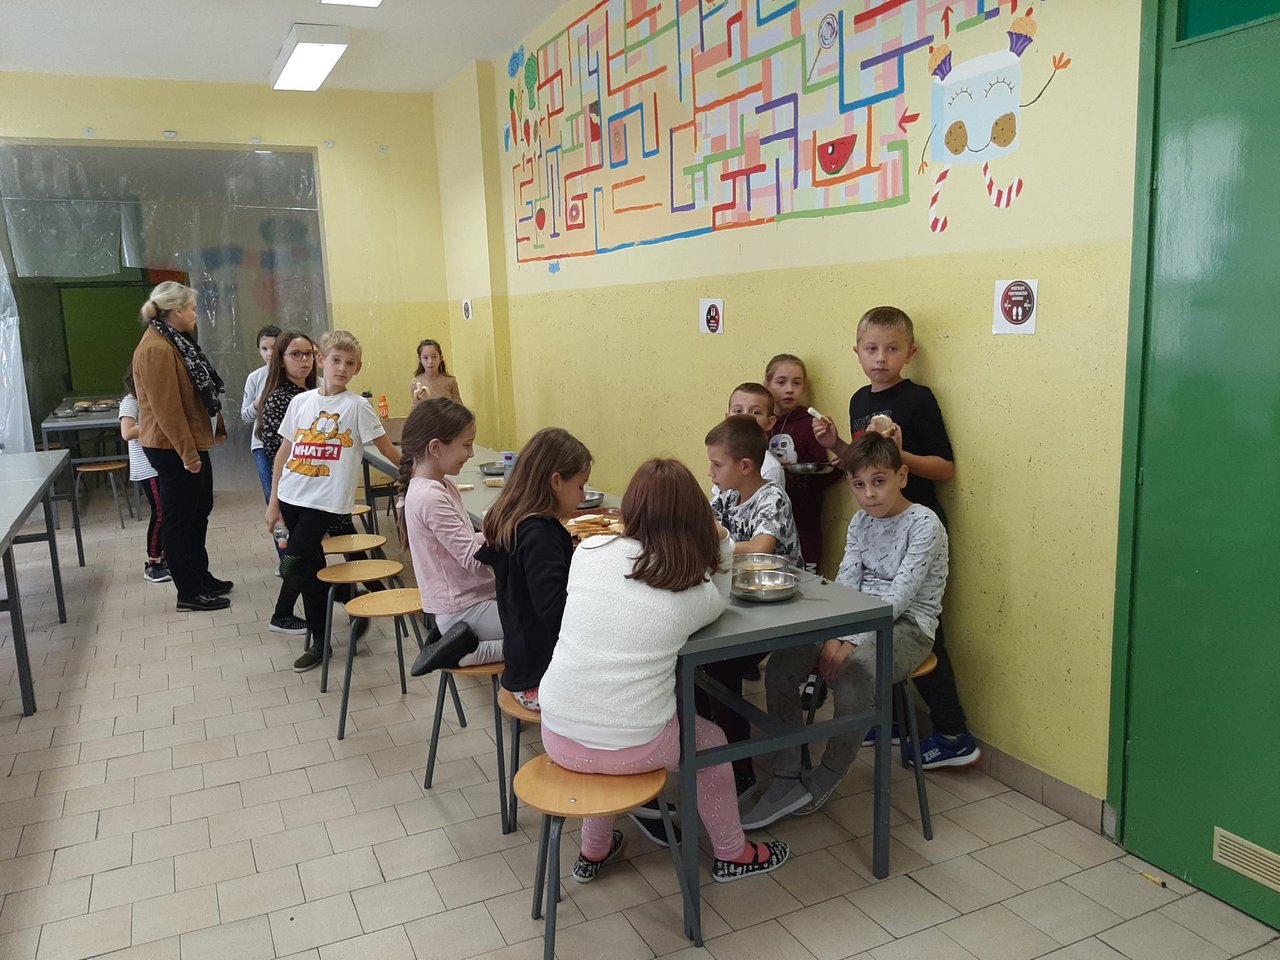 Fotografija: Za 118 učenika slabijeg imovinskog stanja osiguran je školski obrok/Foto: Pakrački list
